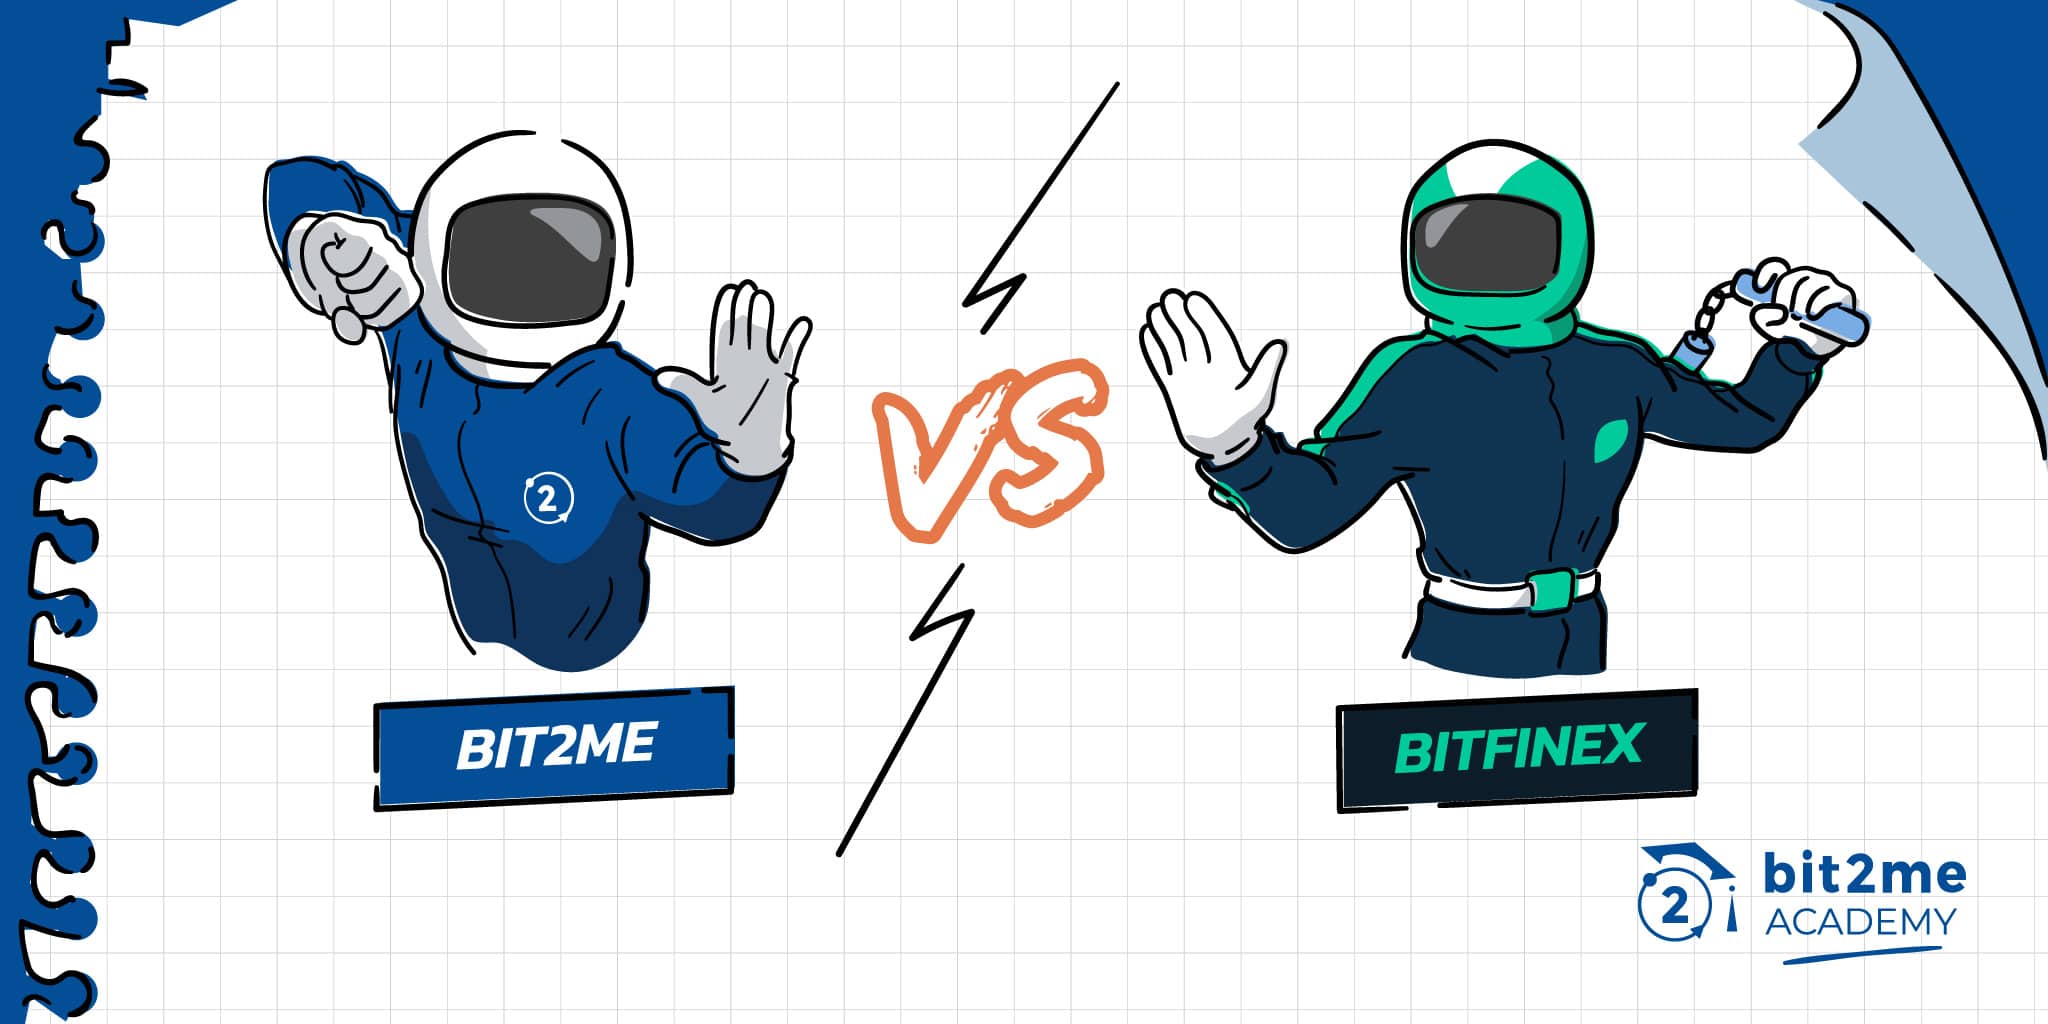 Confronto dettagliato tra Bit2Me e Bitfinex